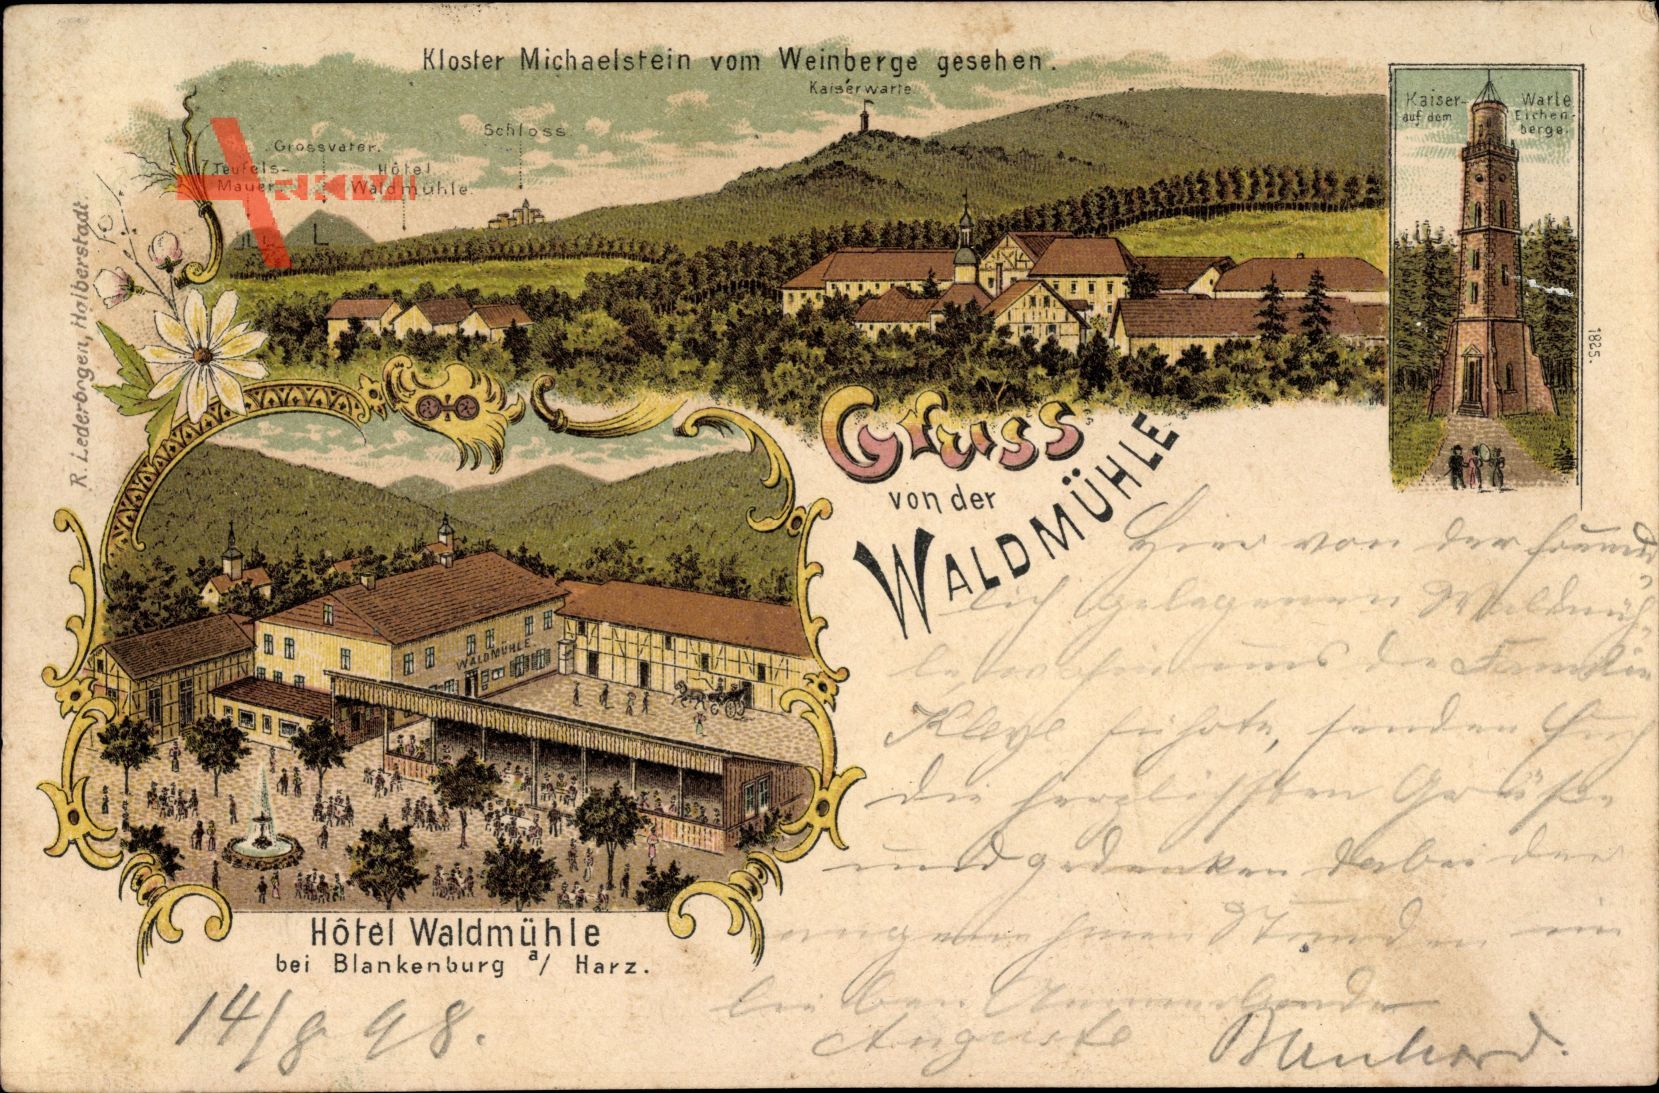 Blankenburg am Harz, Hotel Waldmühle, Kloster Michaelstein, Kaiserwarte